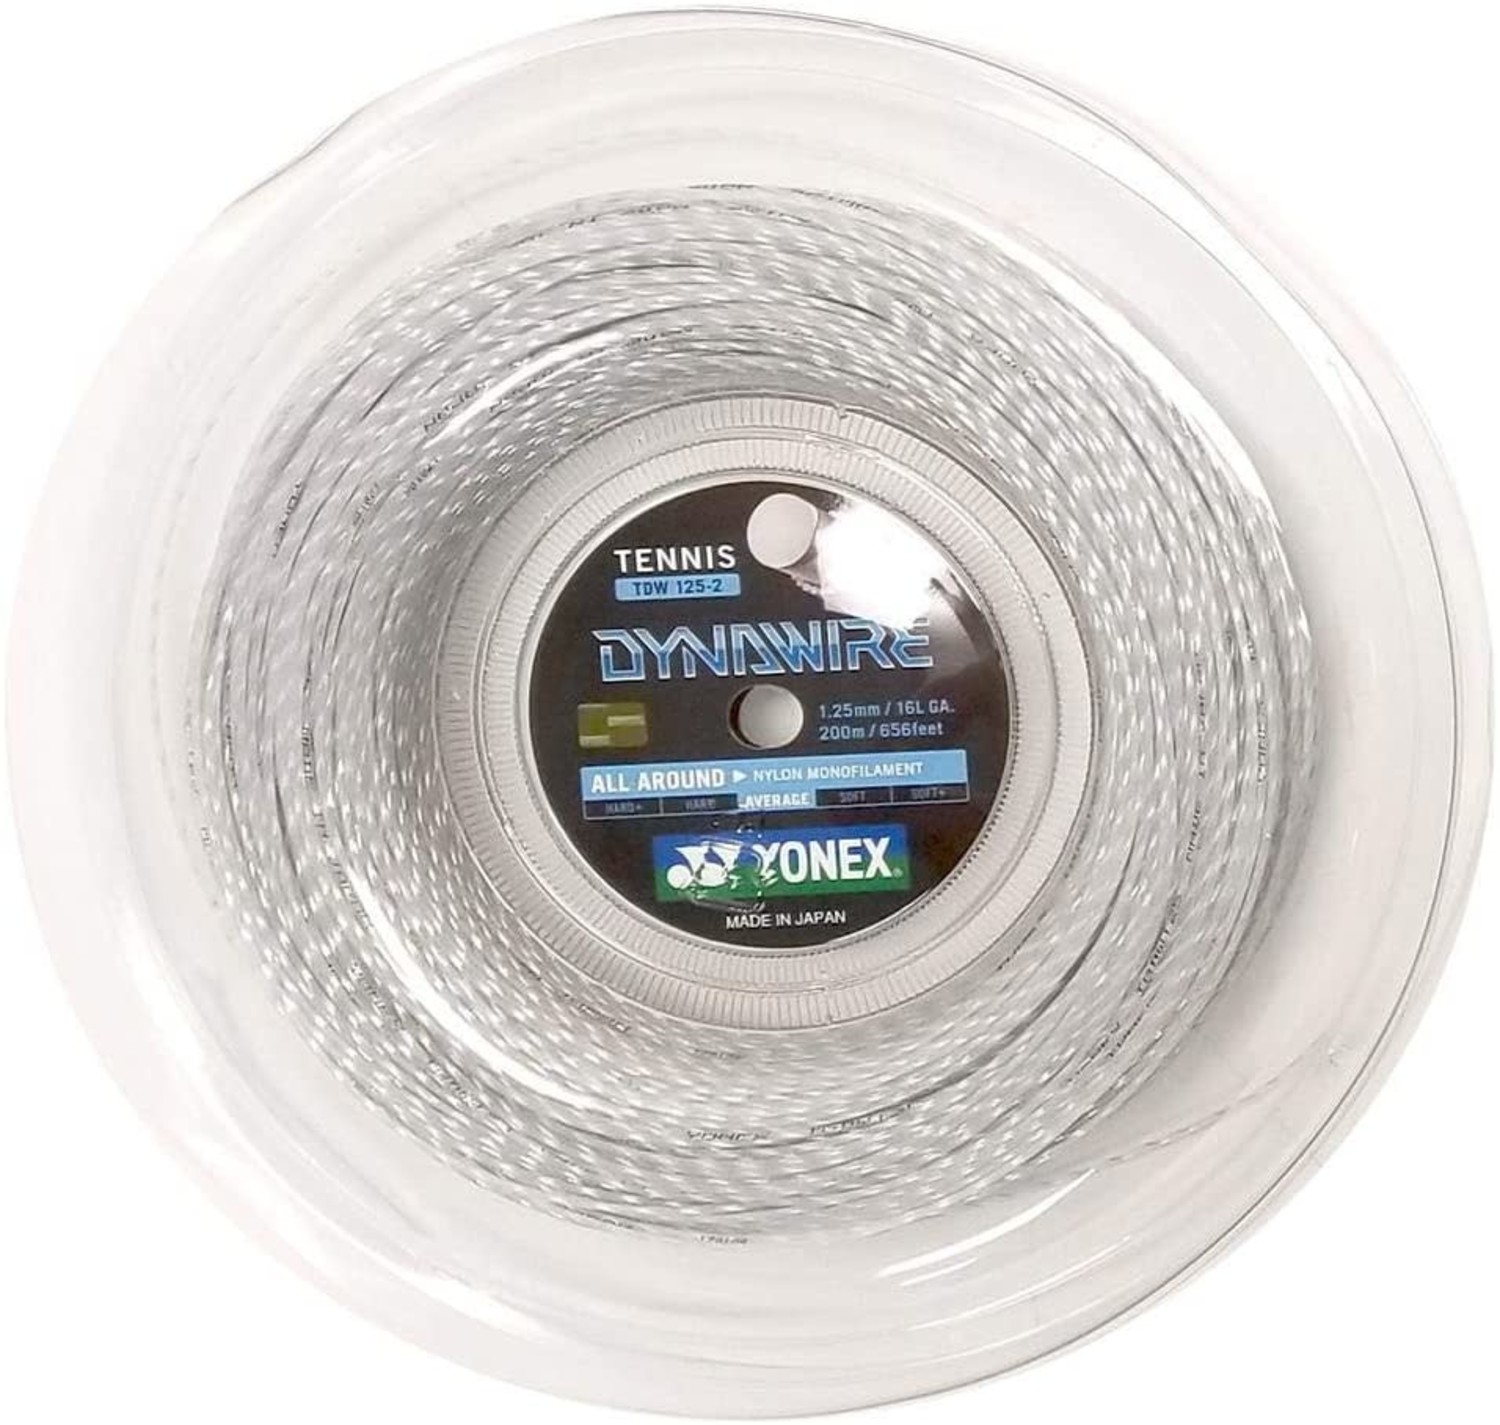 Yonex Dynawire Tennis String Reel, 200M/656 Feet - Cayman Sports